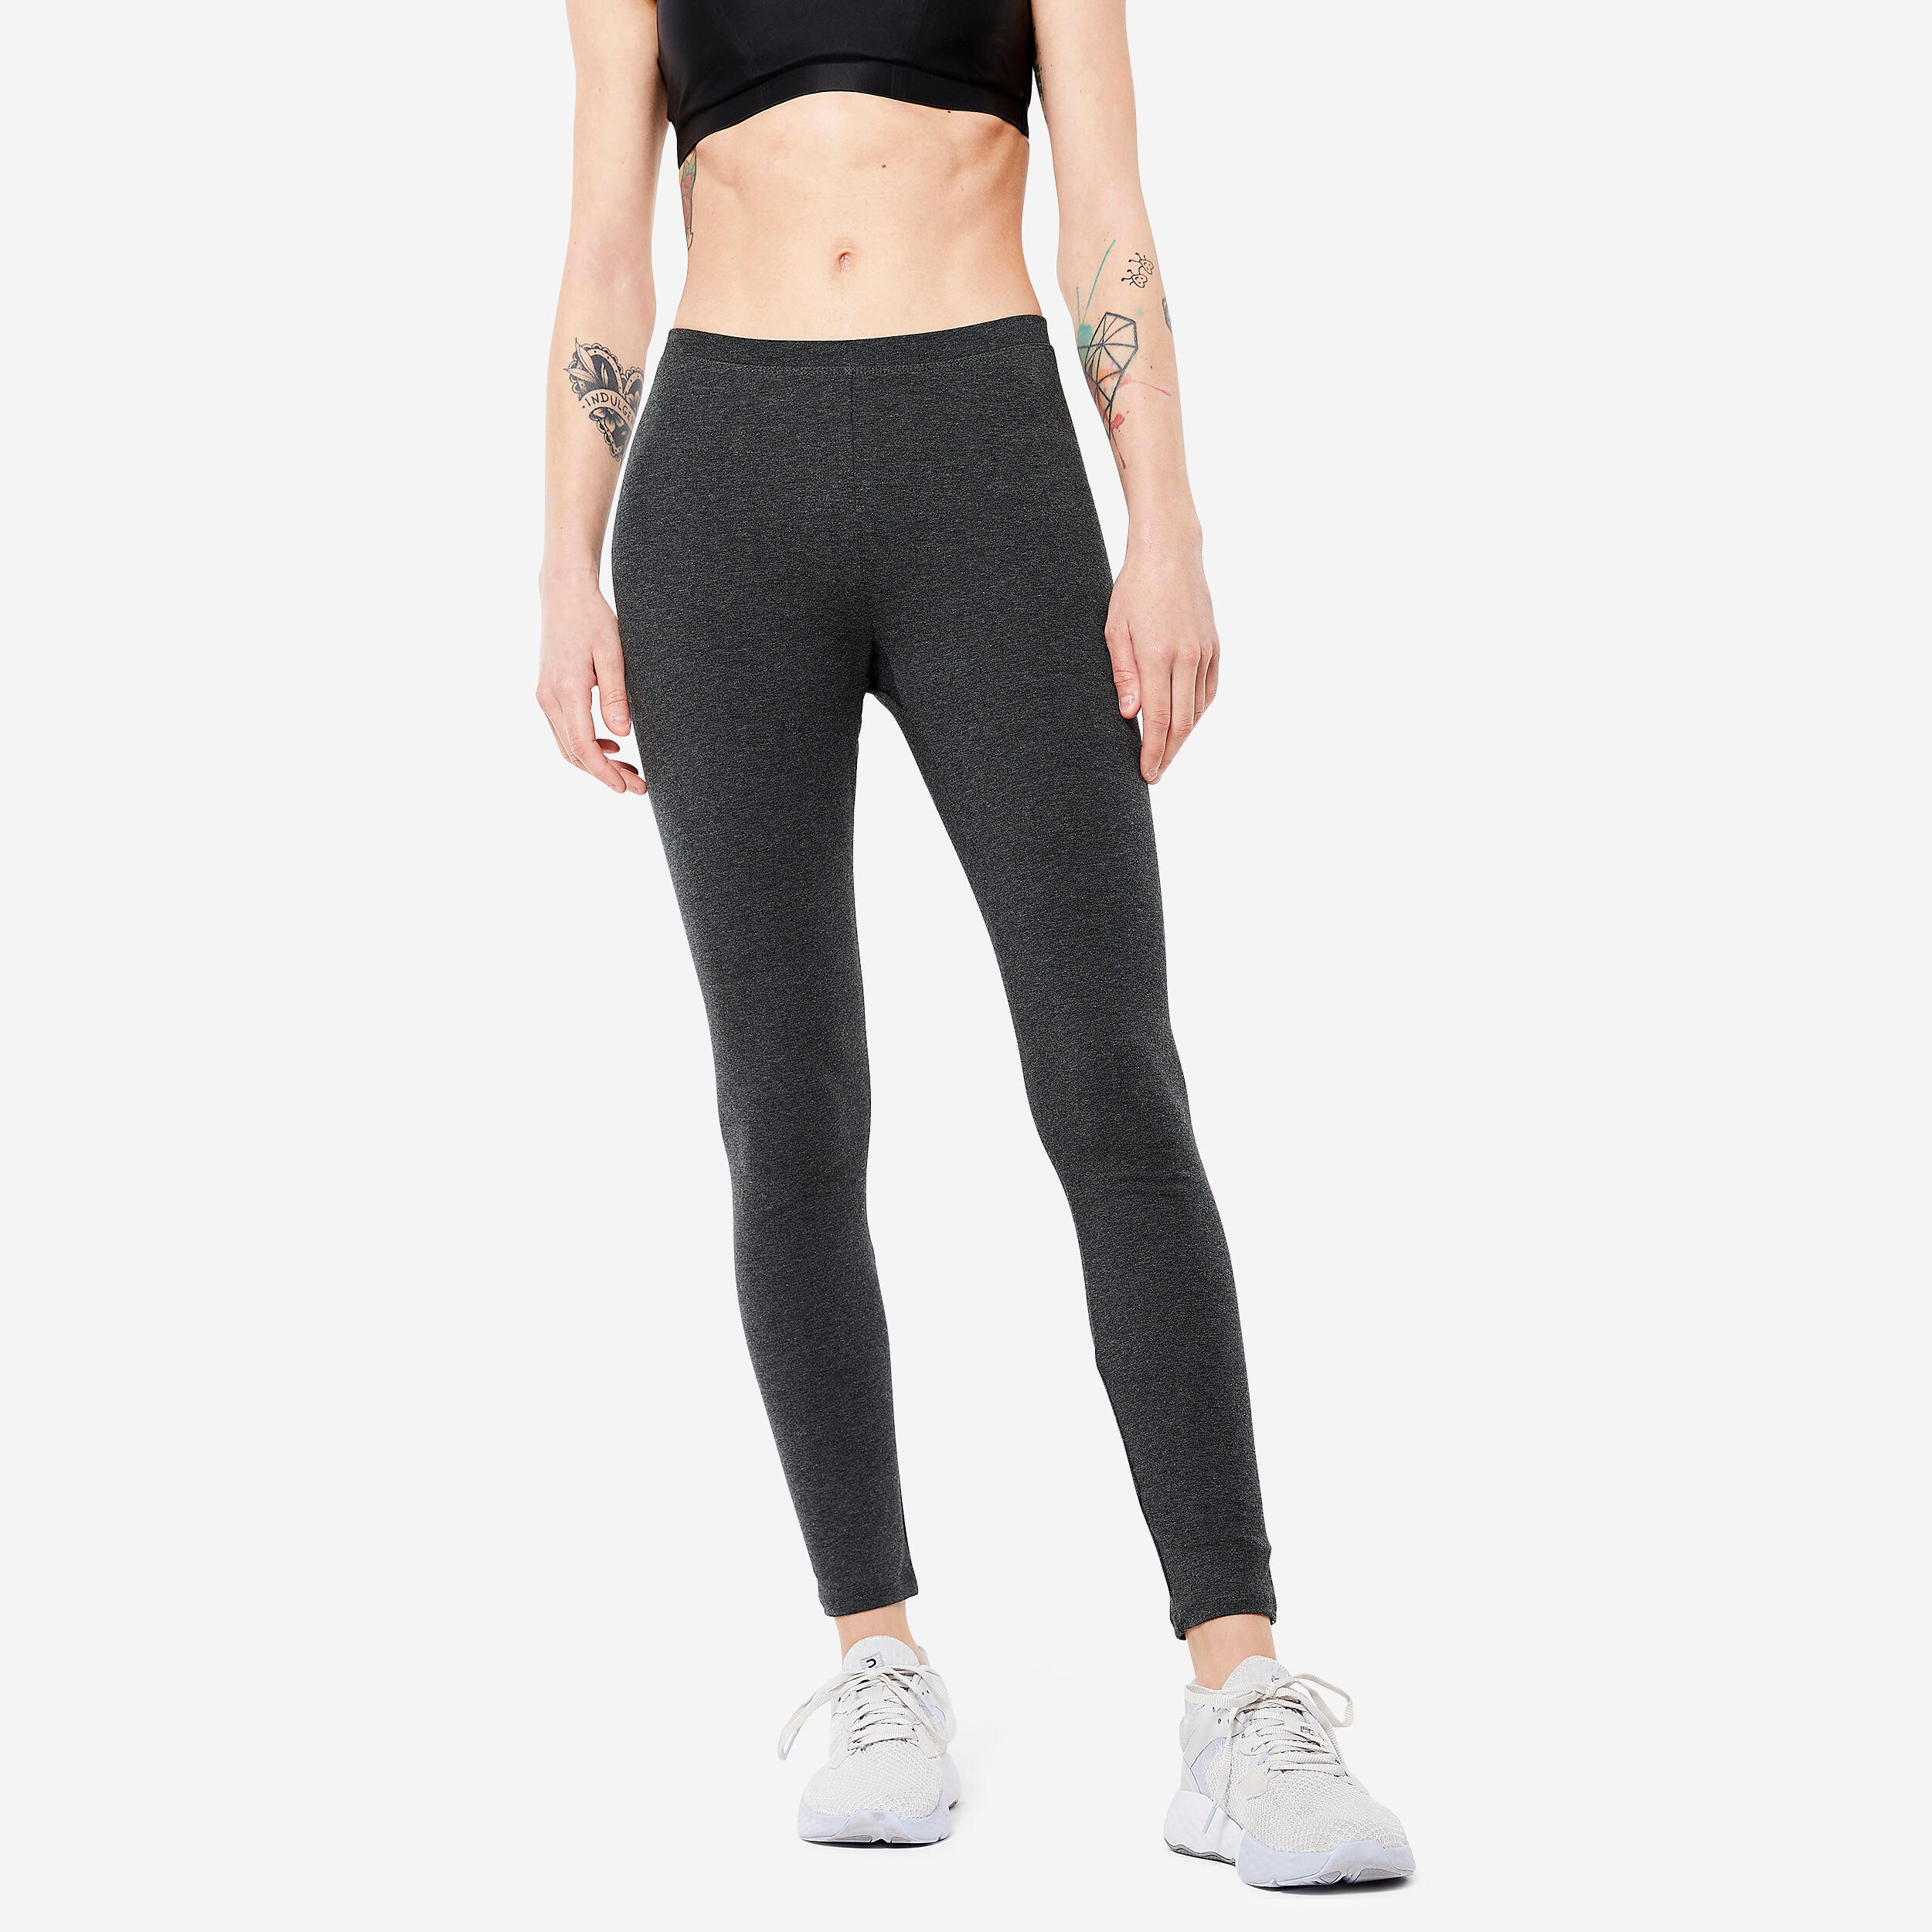 Women's Slim-Fit Fitness Leggings 100 - Mottled Dark Grey 1/4